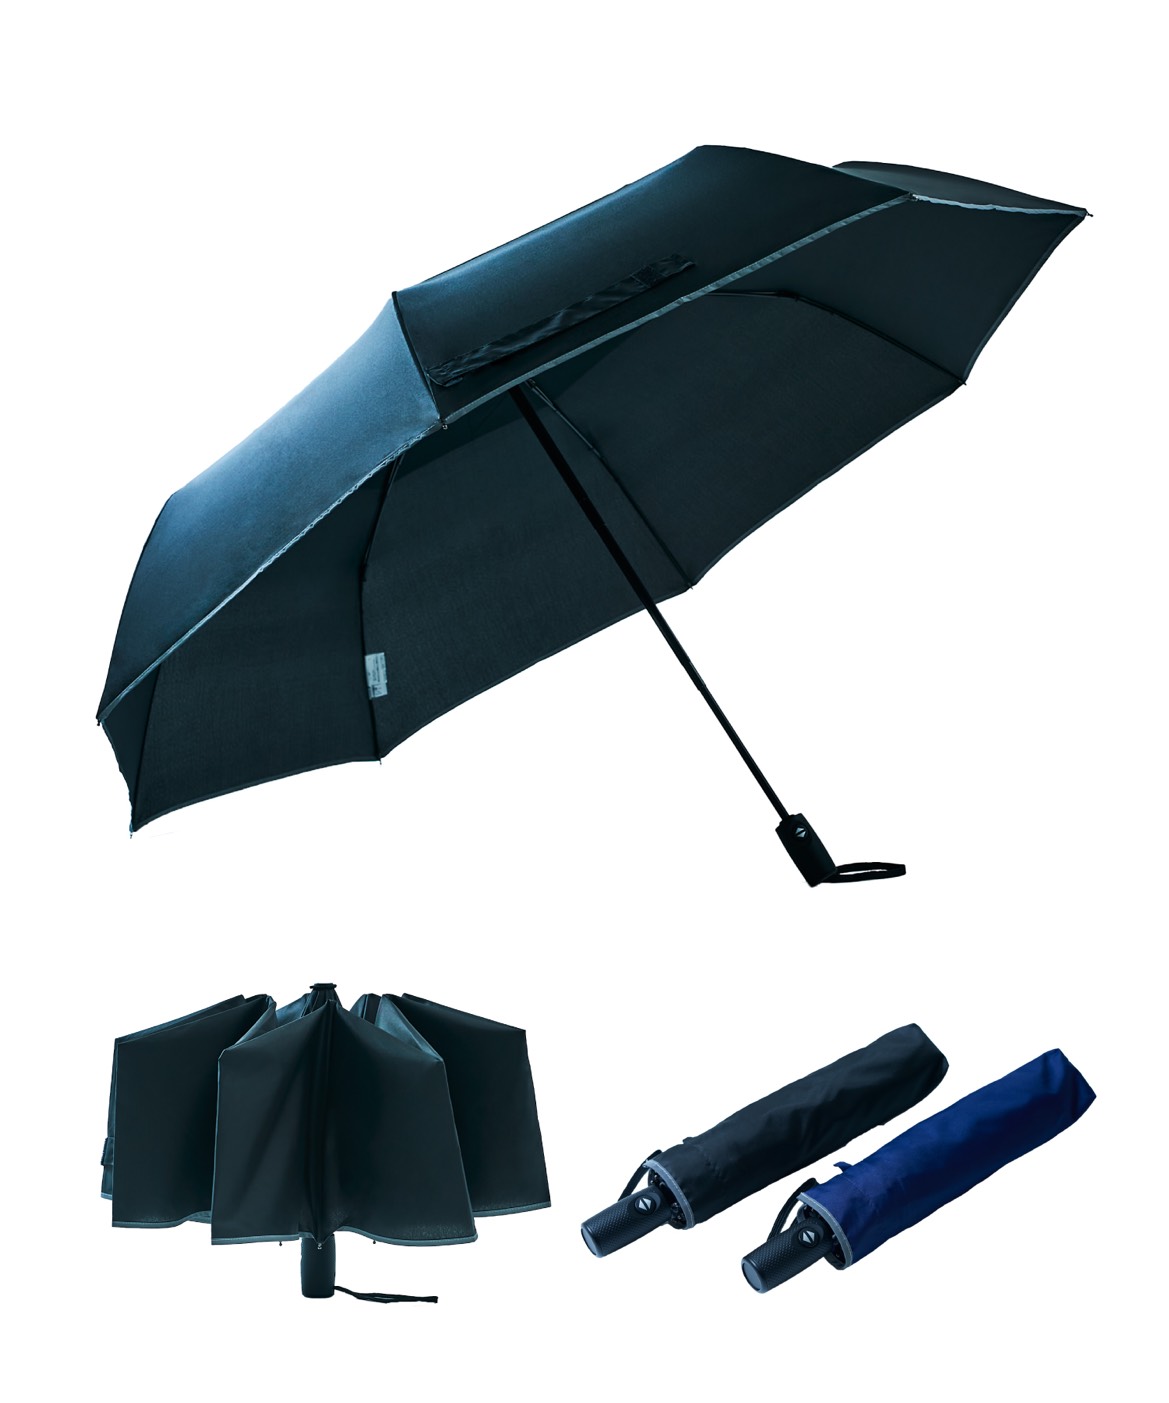 Amazonで人気】片手で楽々開閉できる自動開閉折りたたみ傘。大人が2人並んで歩けるほどのビックサイズタイプと、手を濡らさずたためる逆さ傘タイプが登場。  | NEWSCAST